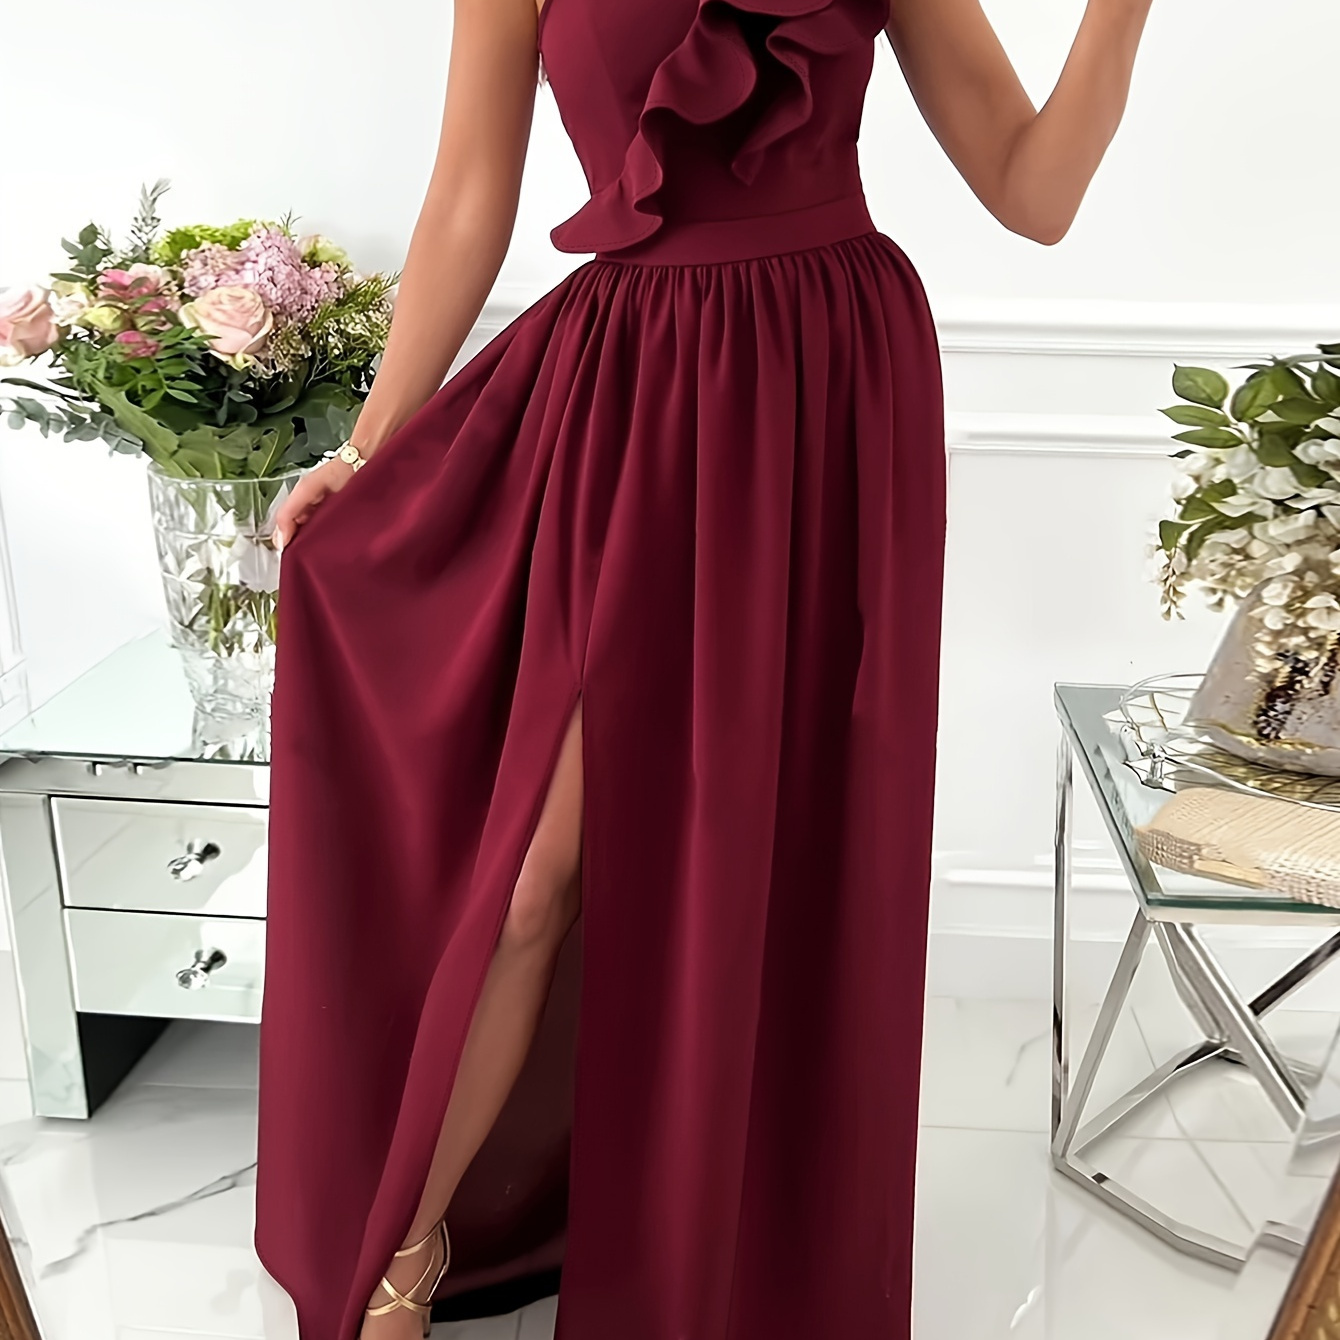 

Ruffle Trim 1 Shoulder Dress, Elegant Split Ruched Floor Length Dress For Party & Banquet, Women's Clothing For Elegant Dressing